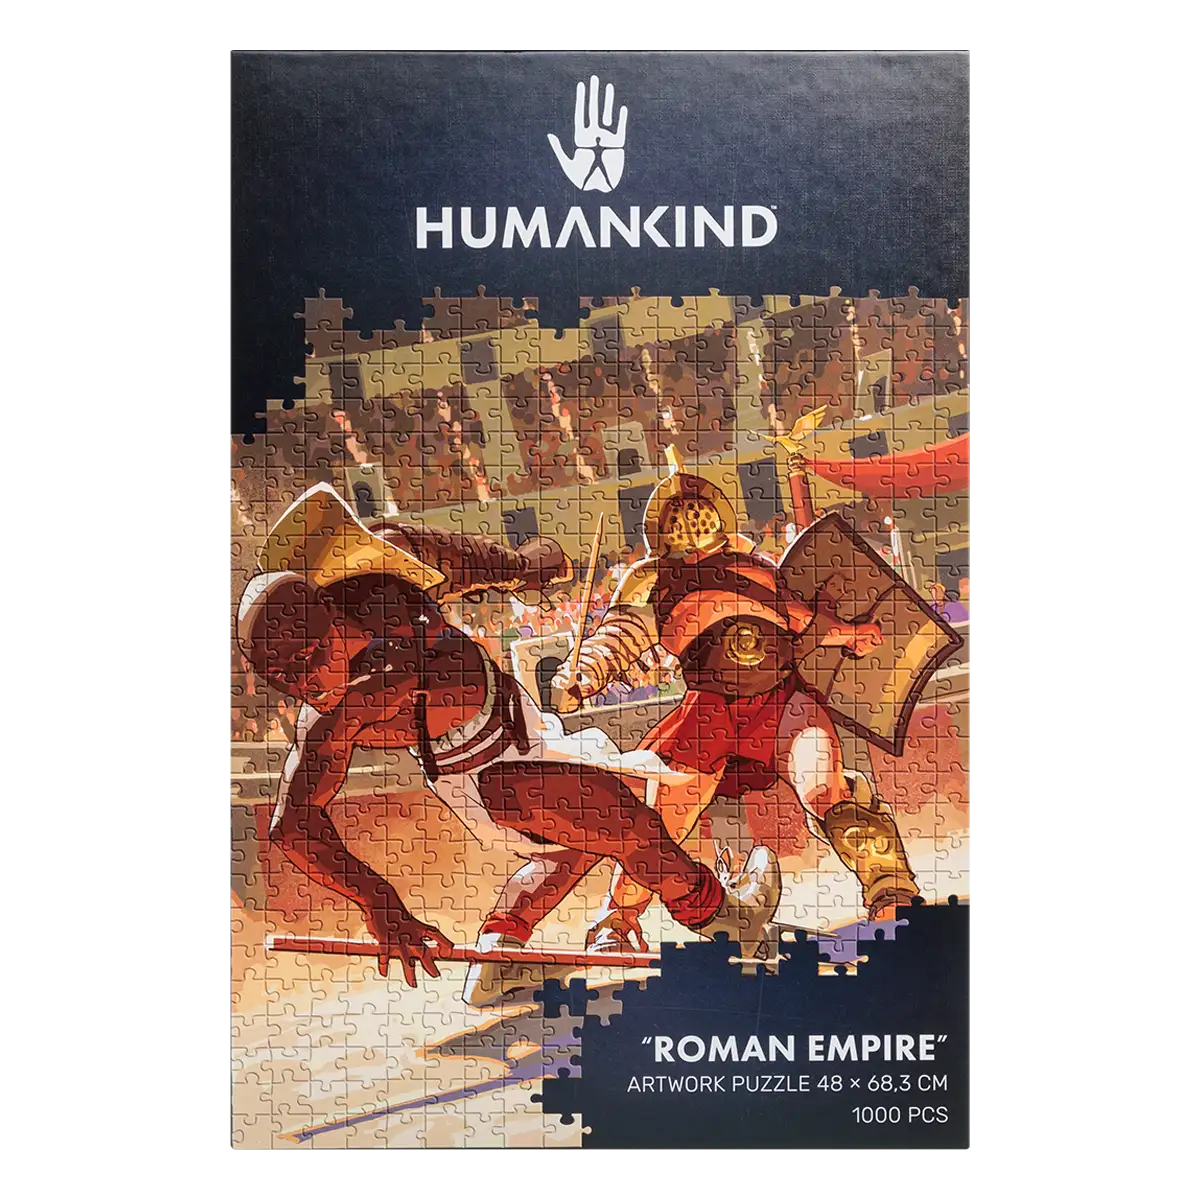 Humankind Puzzle "Roman Empire" Image 6